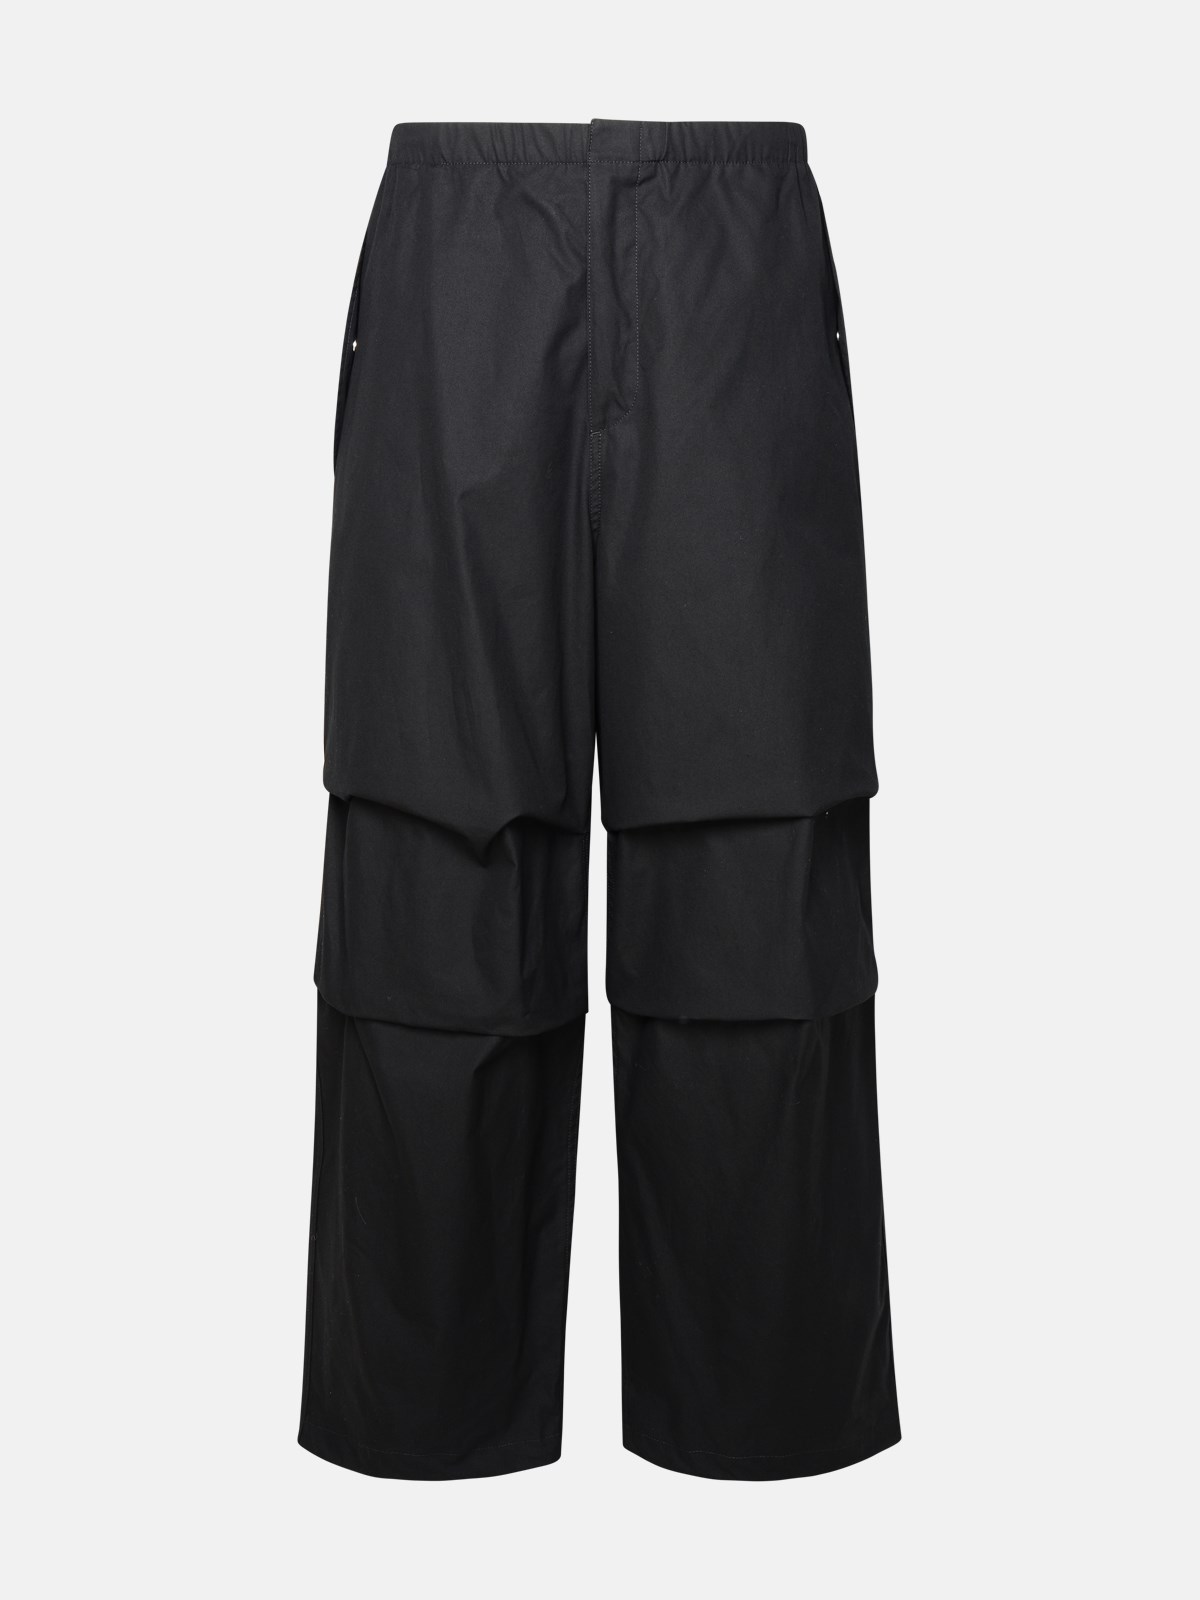 Jil Sander Black Cotton Trousers